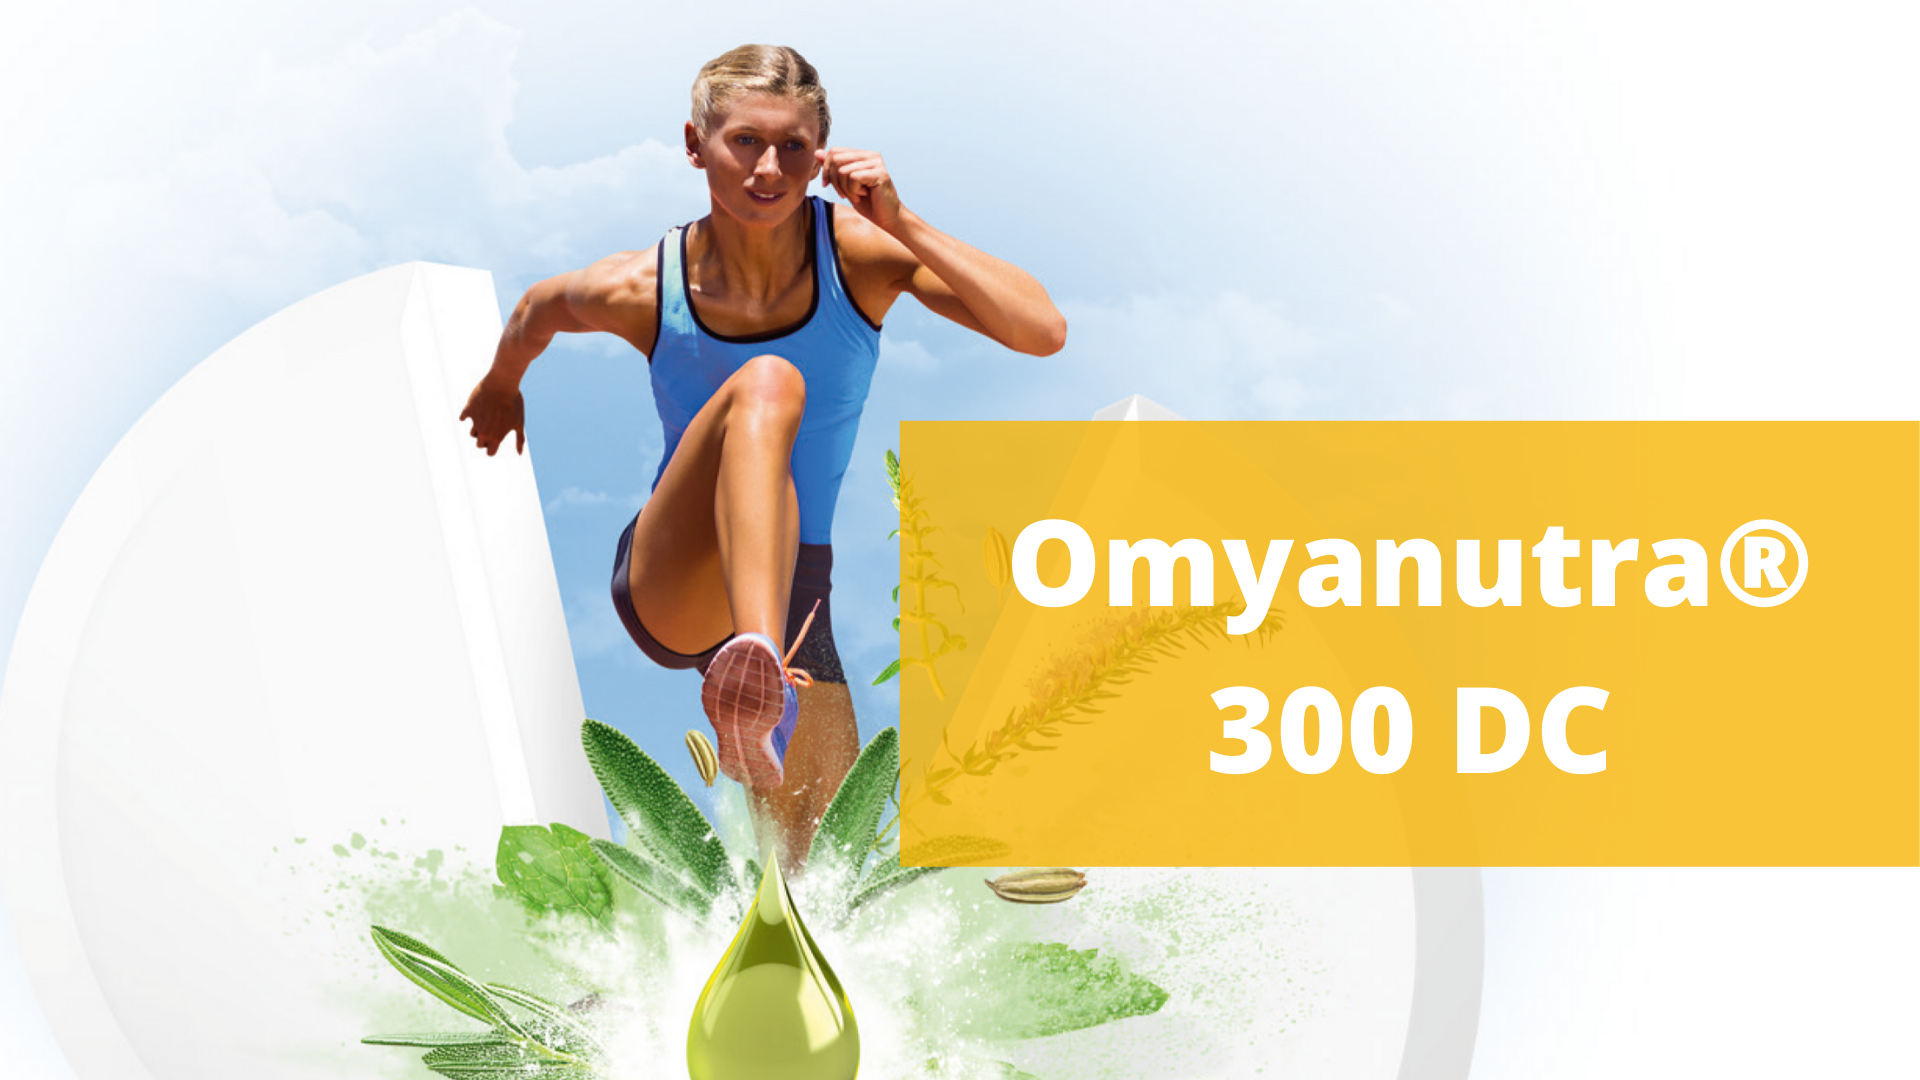 Omyanutra® 300 DC